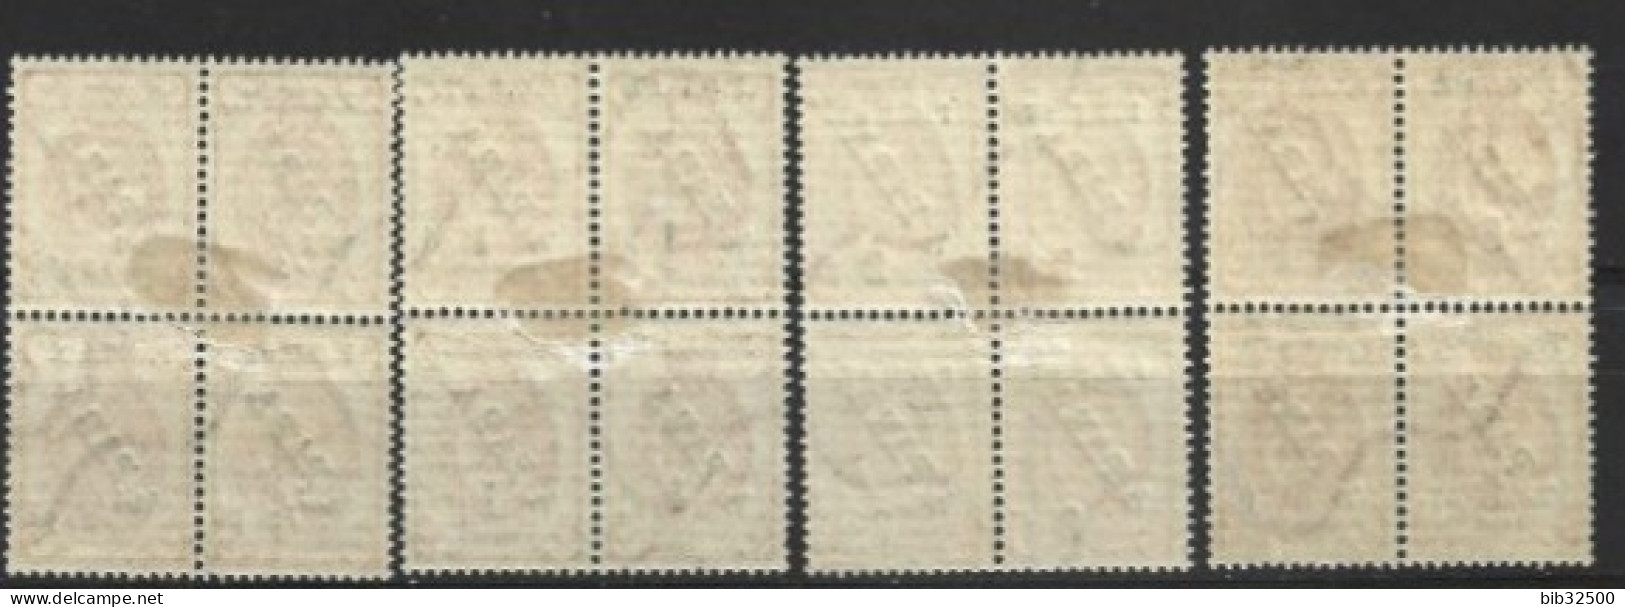 1919 - Timbres De 1900-10- Avec Surcharge G Et Nouvelle Valeur  - 4 Blocs De 4 - Non émis - - Levante